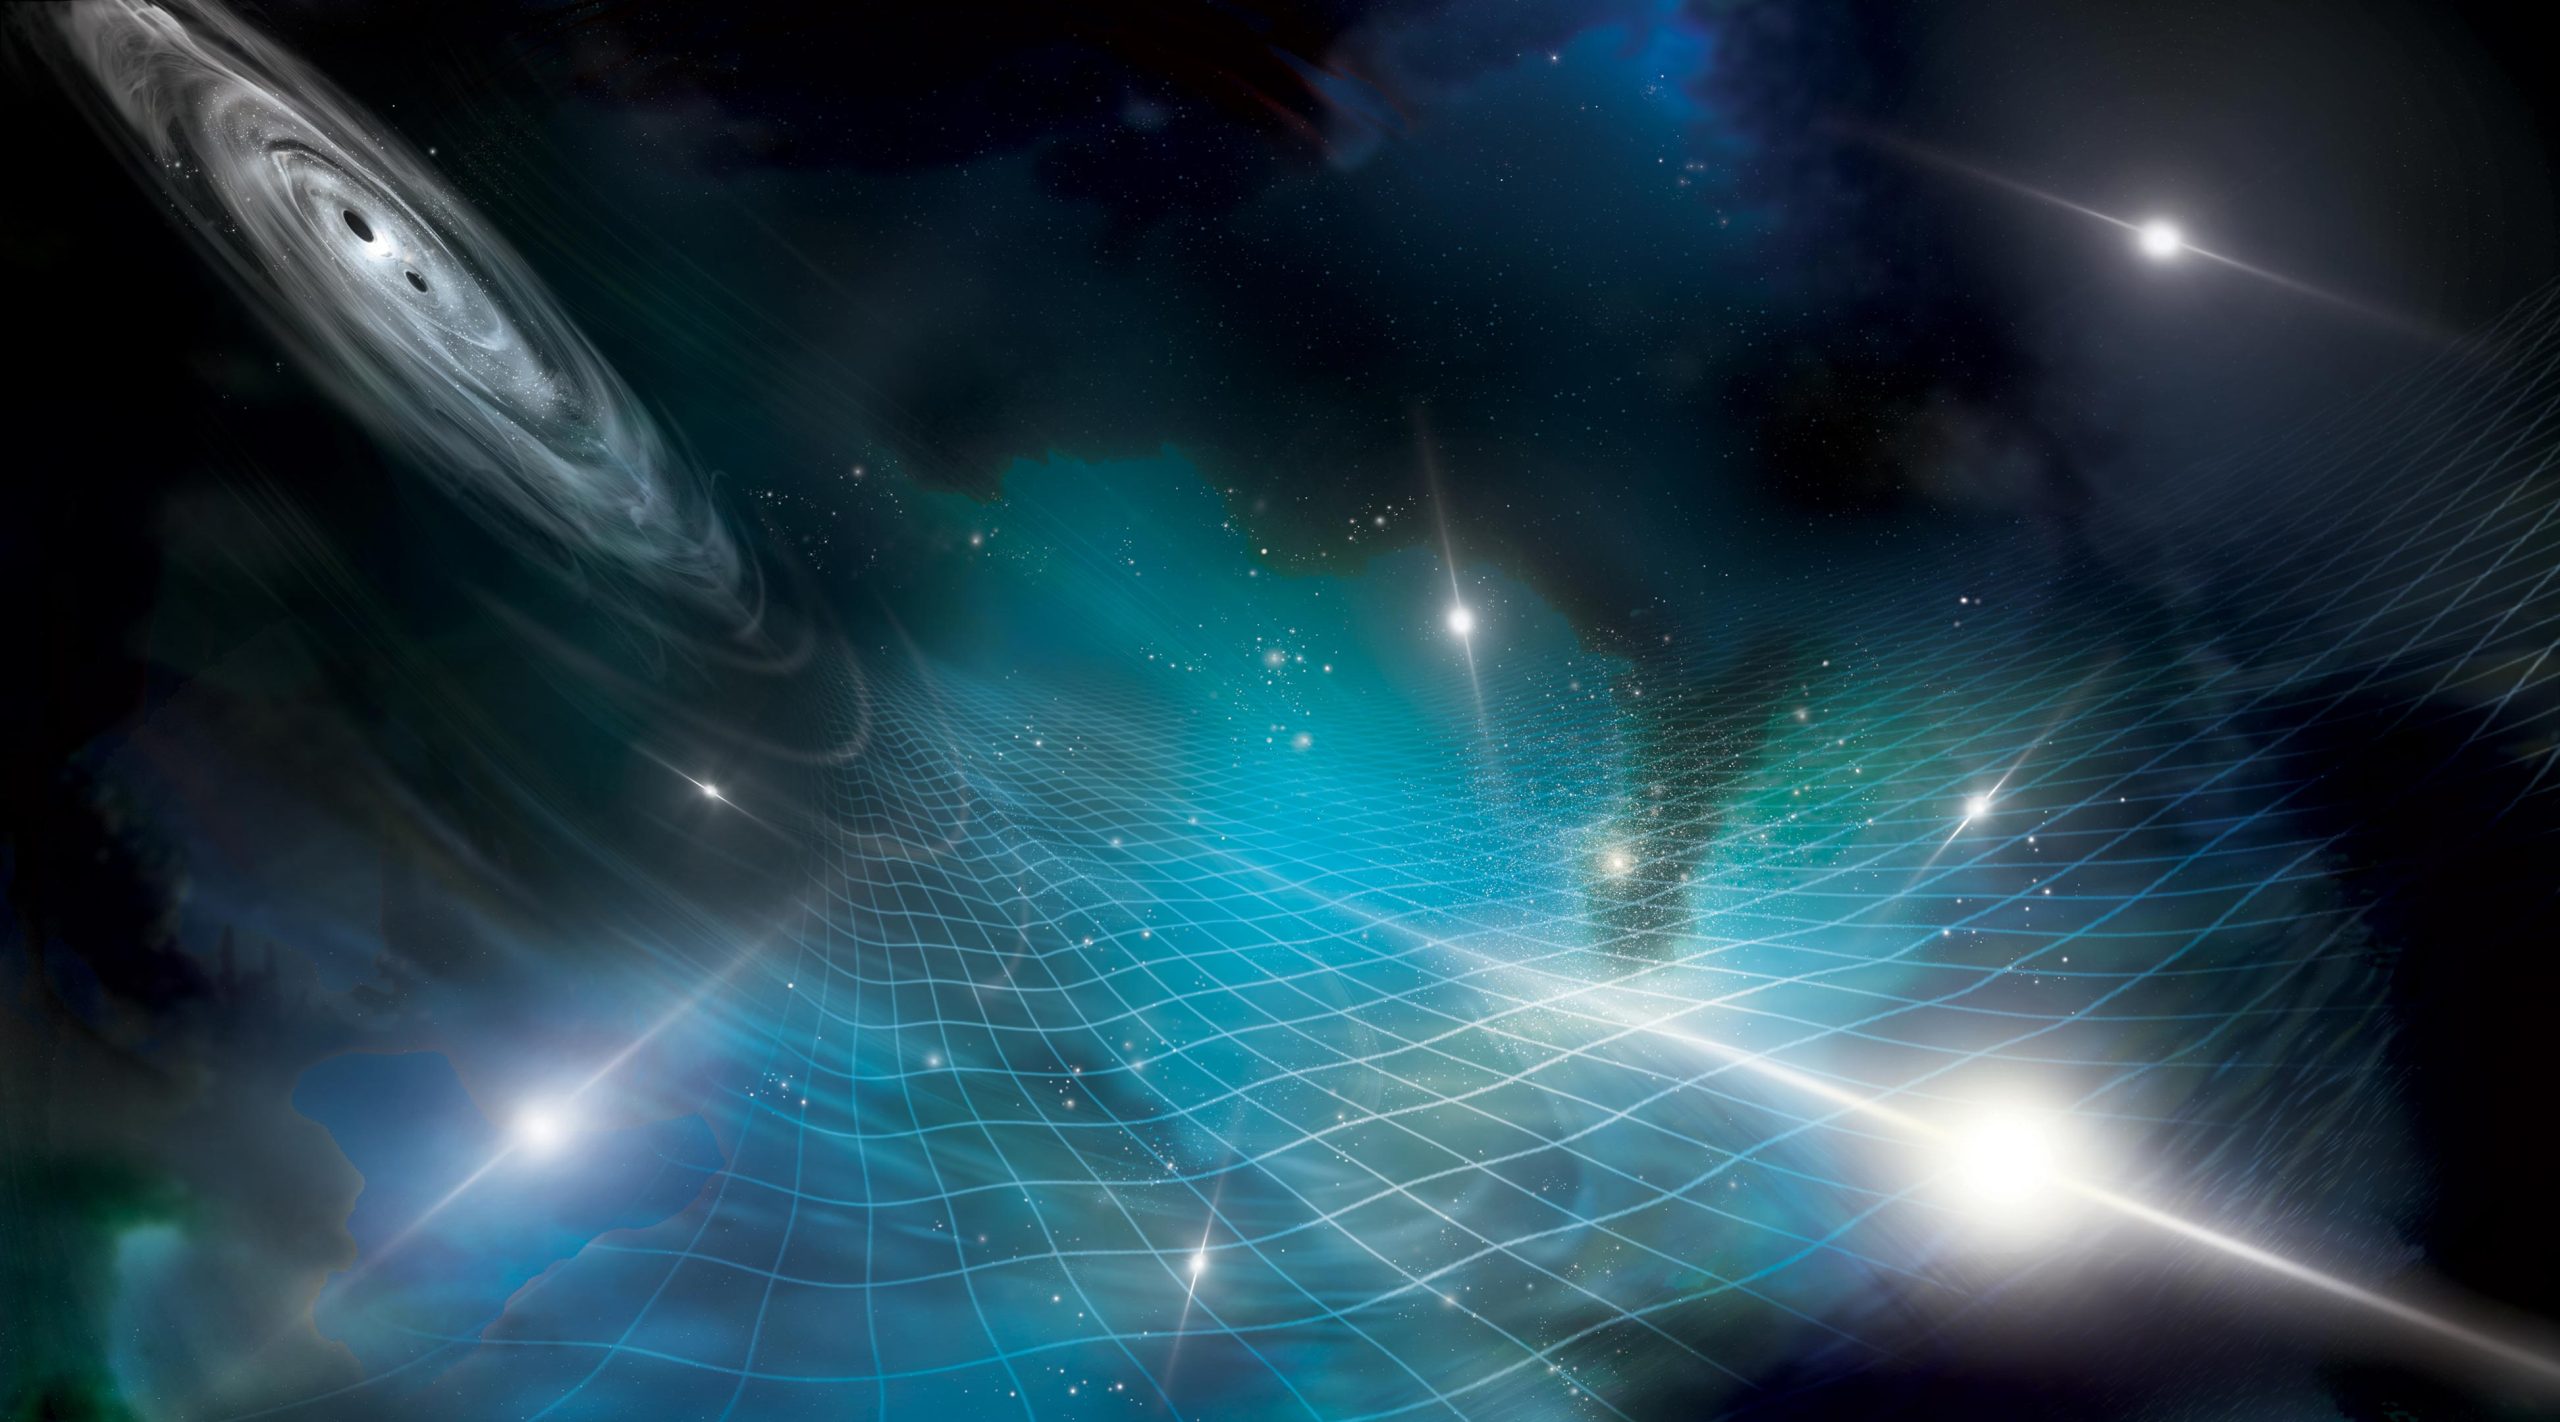 Ondas gravitacionales detectadas usando «relojes cósmicos» y distorsiones espaciales invisibles